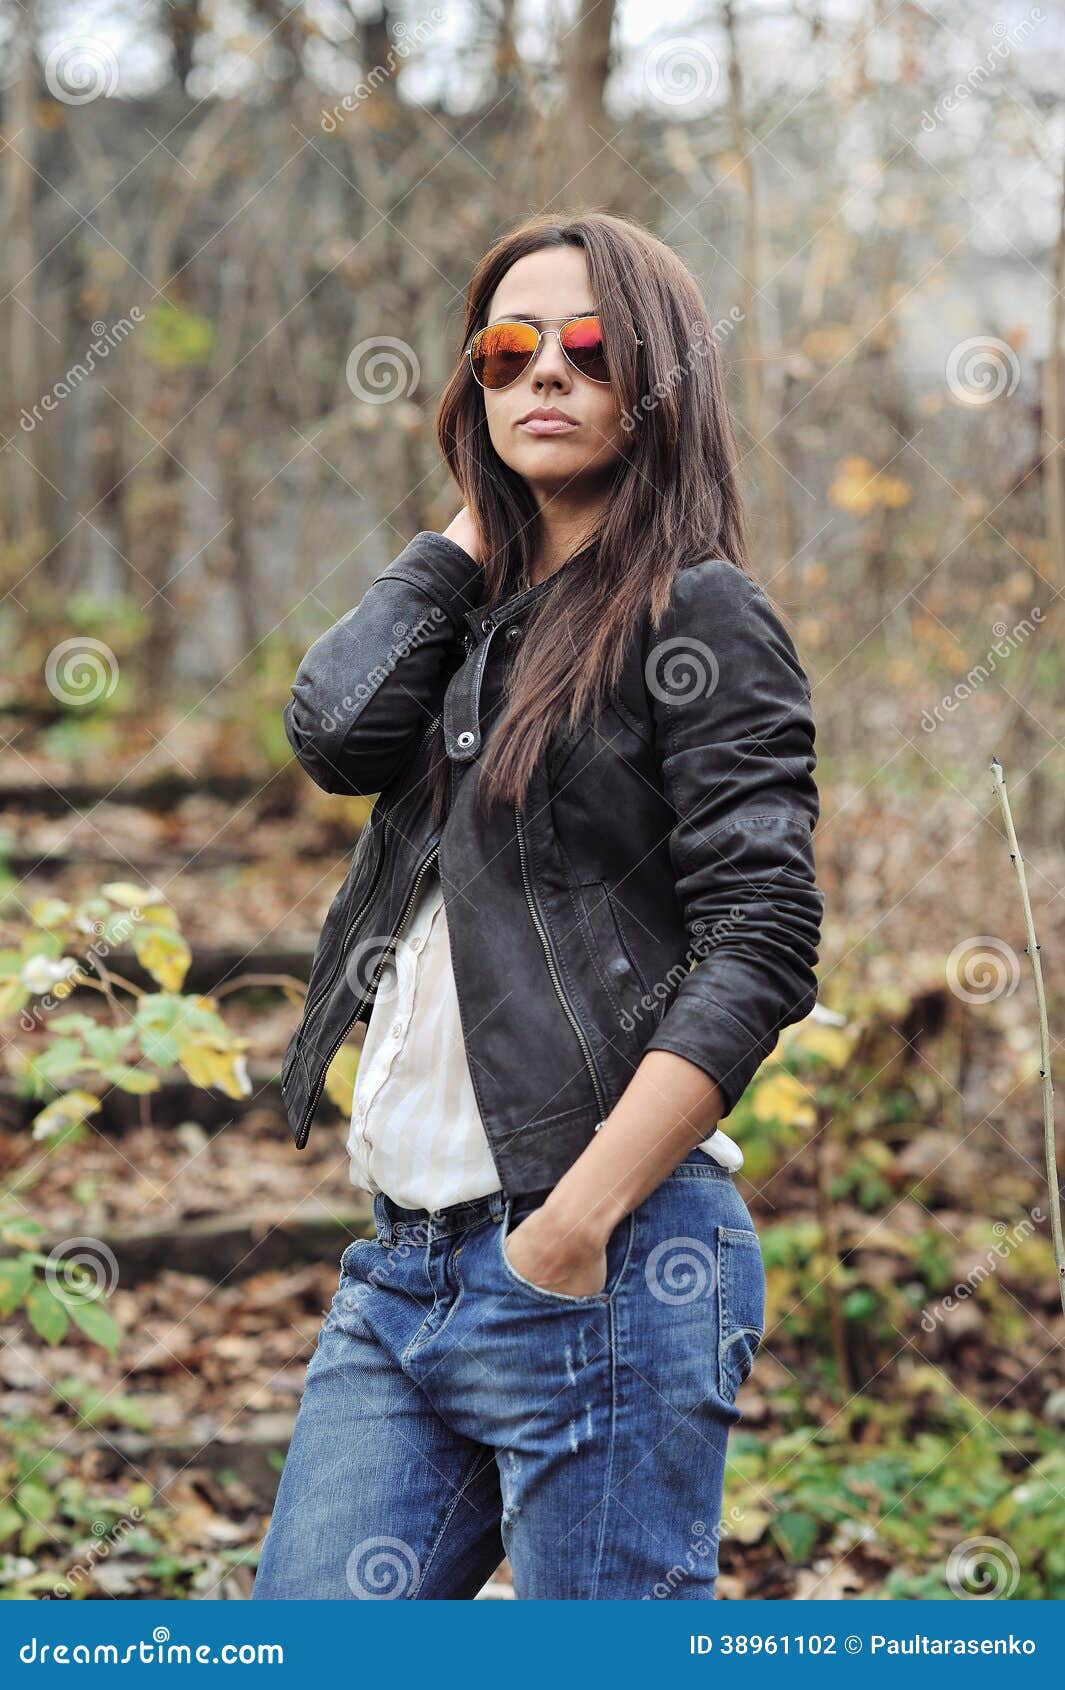 girl wearing jeans jacket